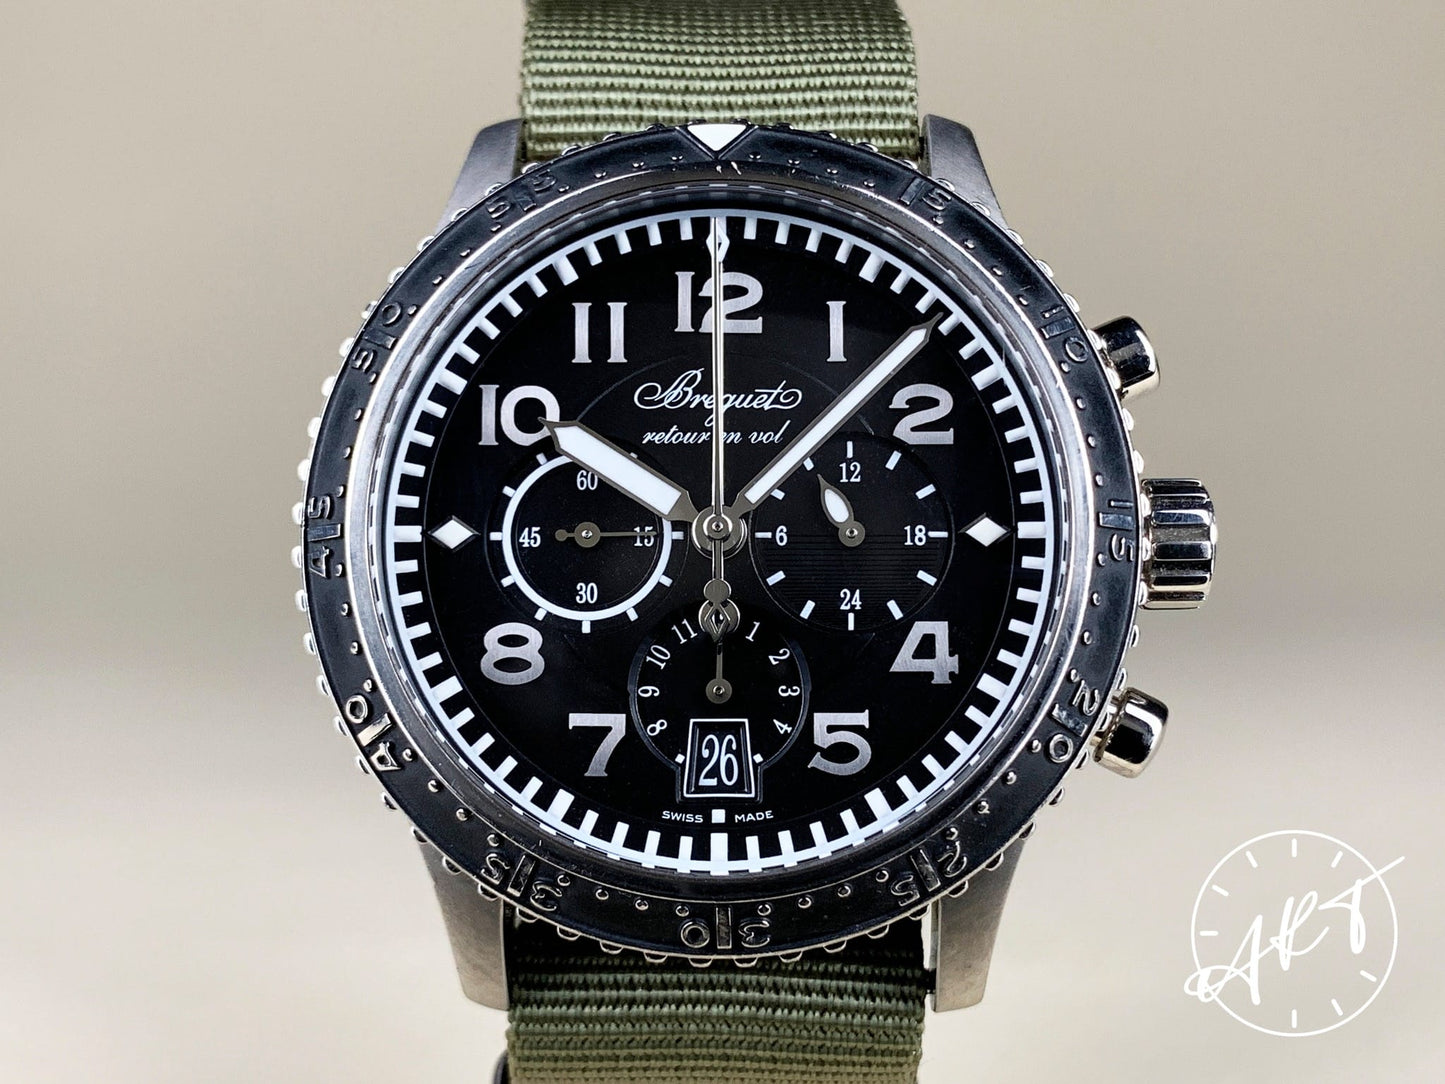 Breguet Type XXI Chronograph Black Dial Titanium Auto Pilot Watch 3810TI w/ Box